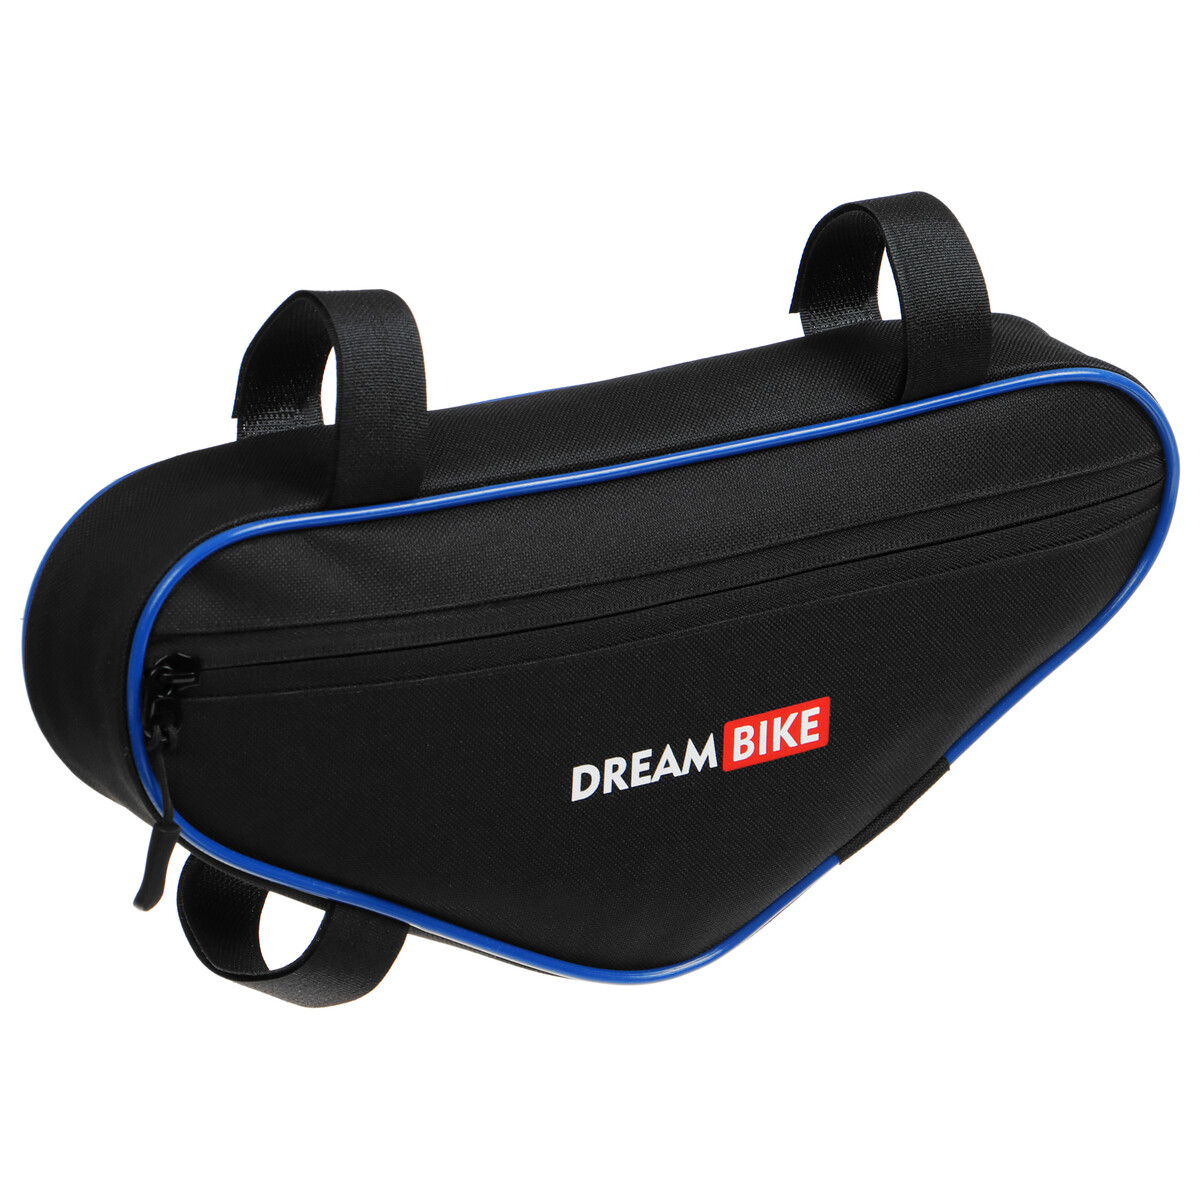 Велосумка dream bike под раму, 32х15х5, цвет черный/синий велосумка scicon fuel bag на раму для гелей батончиков bg027010506